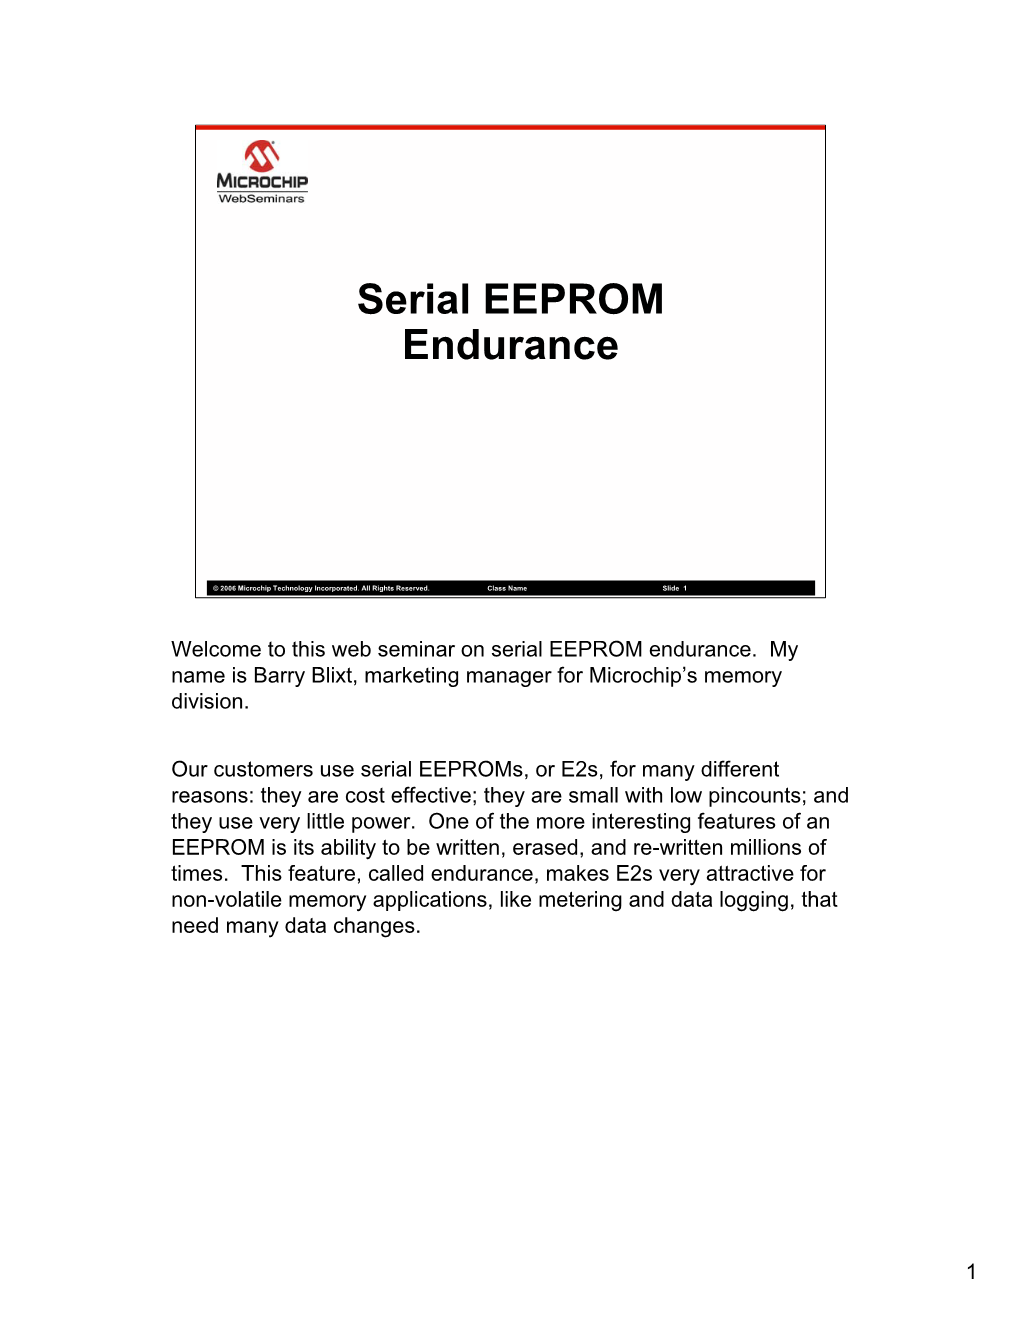 Serial EEPROM Endurance